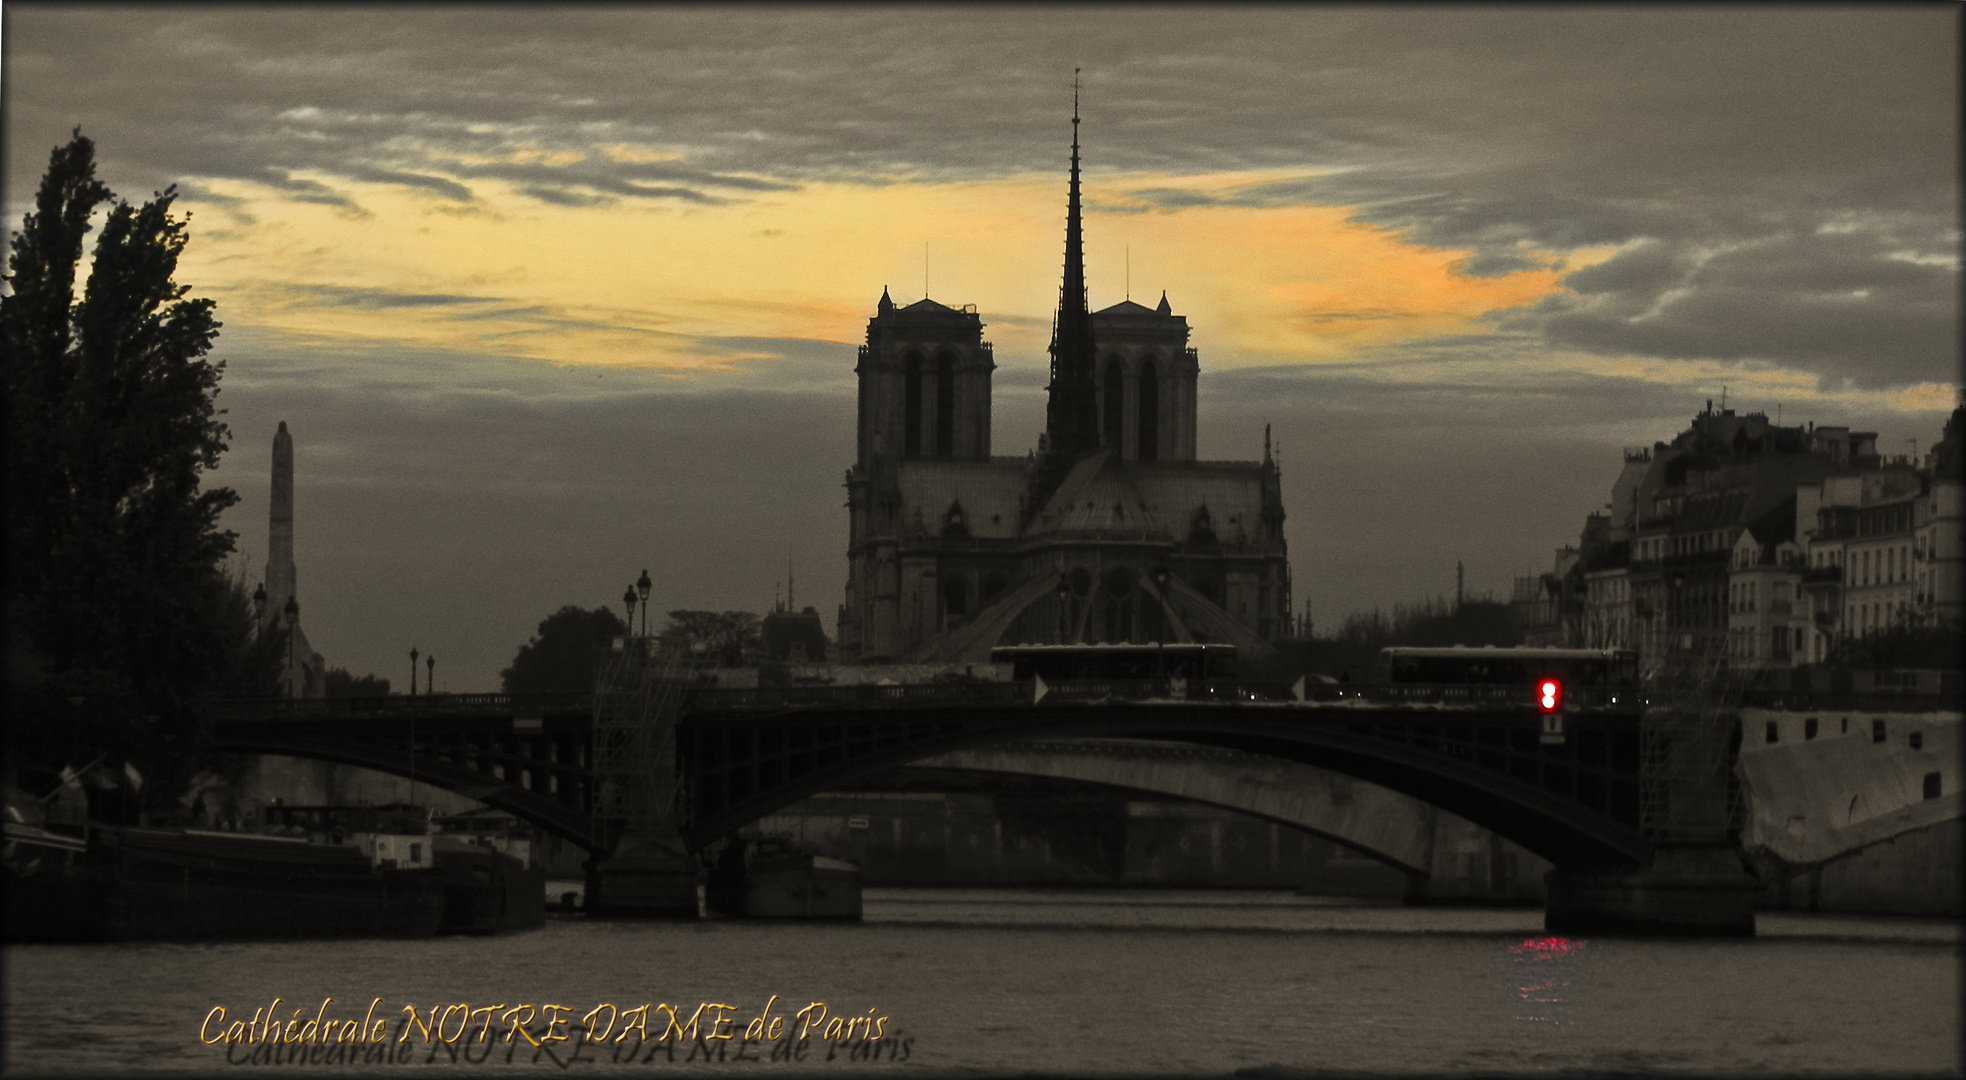 Cathédrale NOTRE DAME de Paris